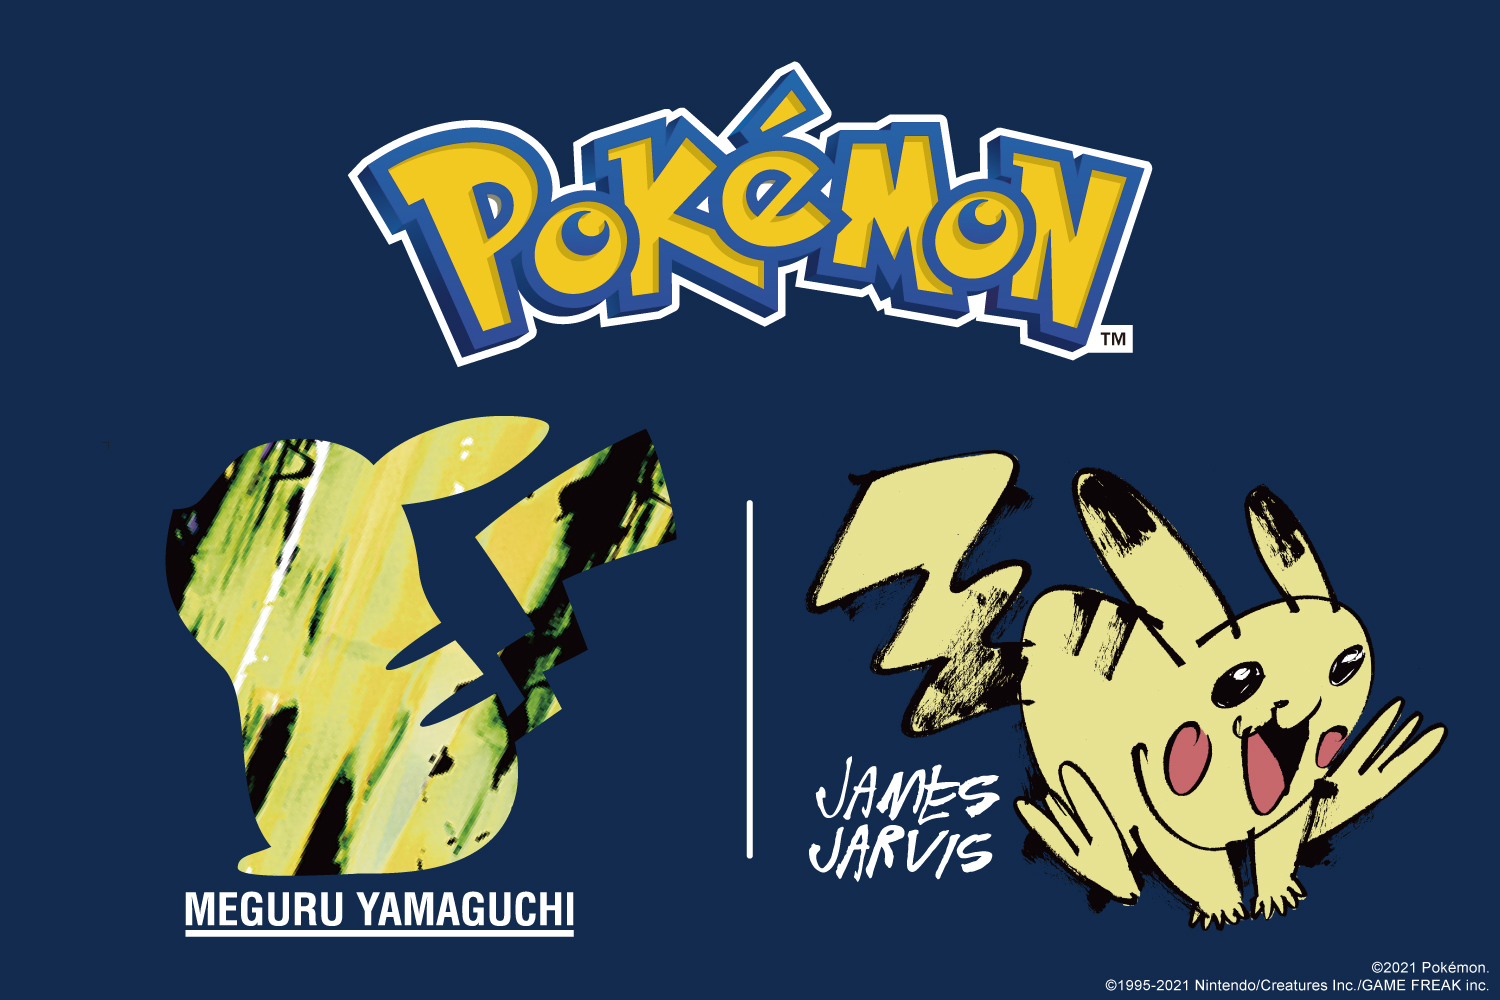 เมงุรุ ยามางูจิ และเจมส์ จาร์วิส รังสรรค์คอลเลกชัน Pokémon Meets Artists UT พร้อมวางขาย 27 สิงหาคมนี้